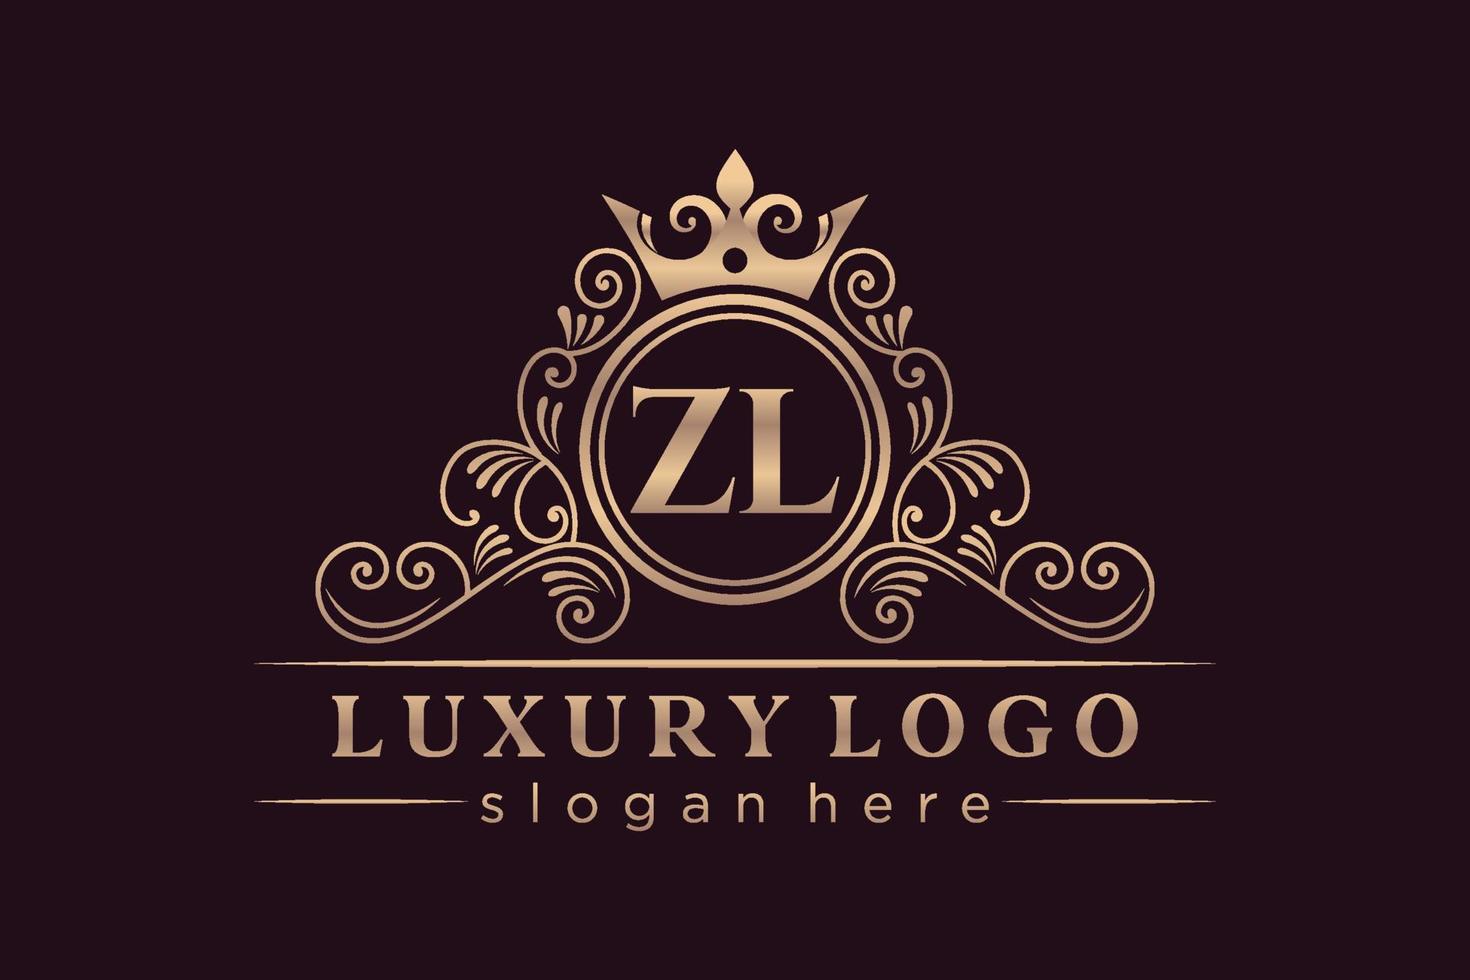 ZL Initial Letter Gold calligraphic feminine floral hand drawn heraldic monogram antique vintage style luxury logo design Premium Vector